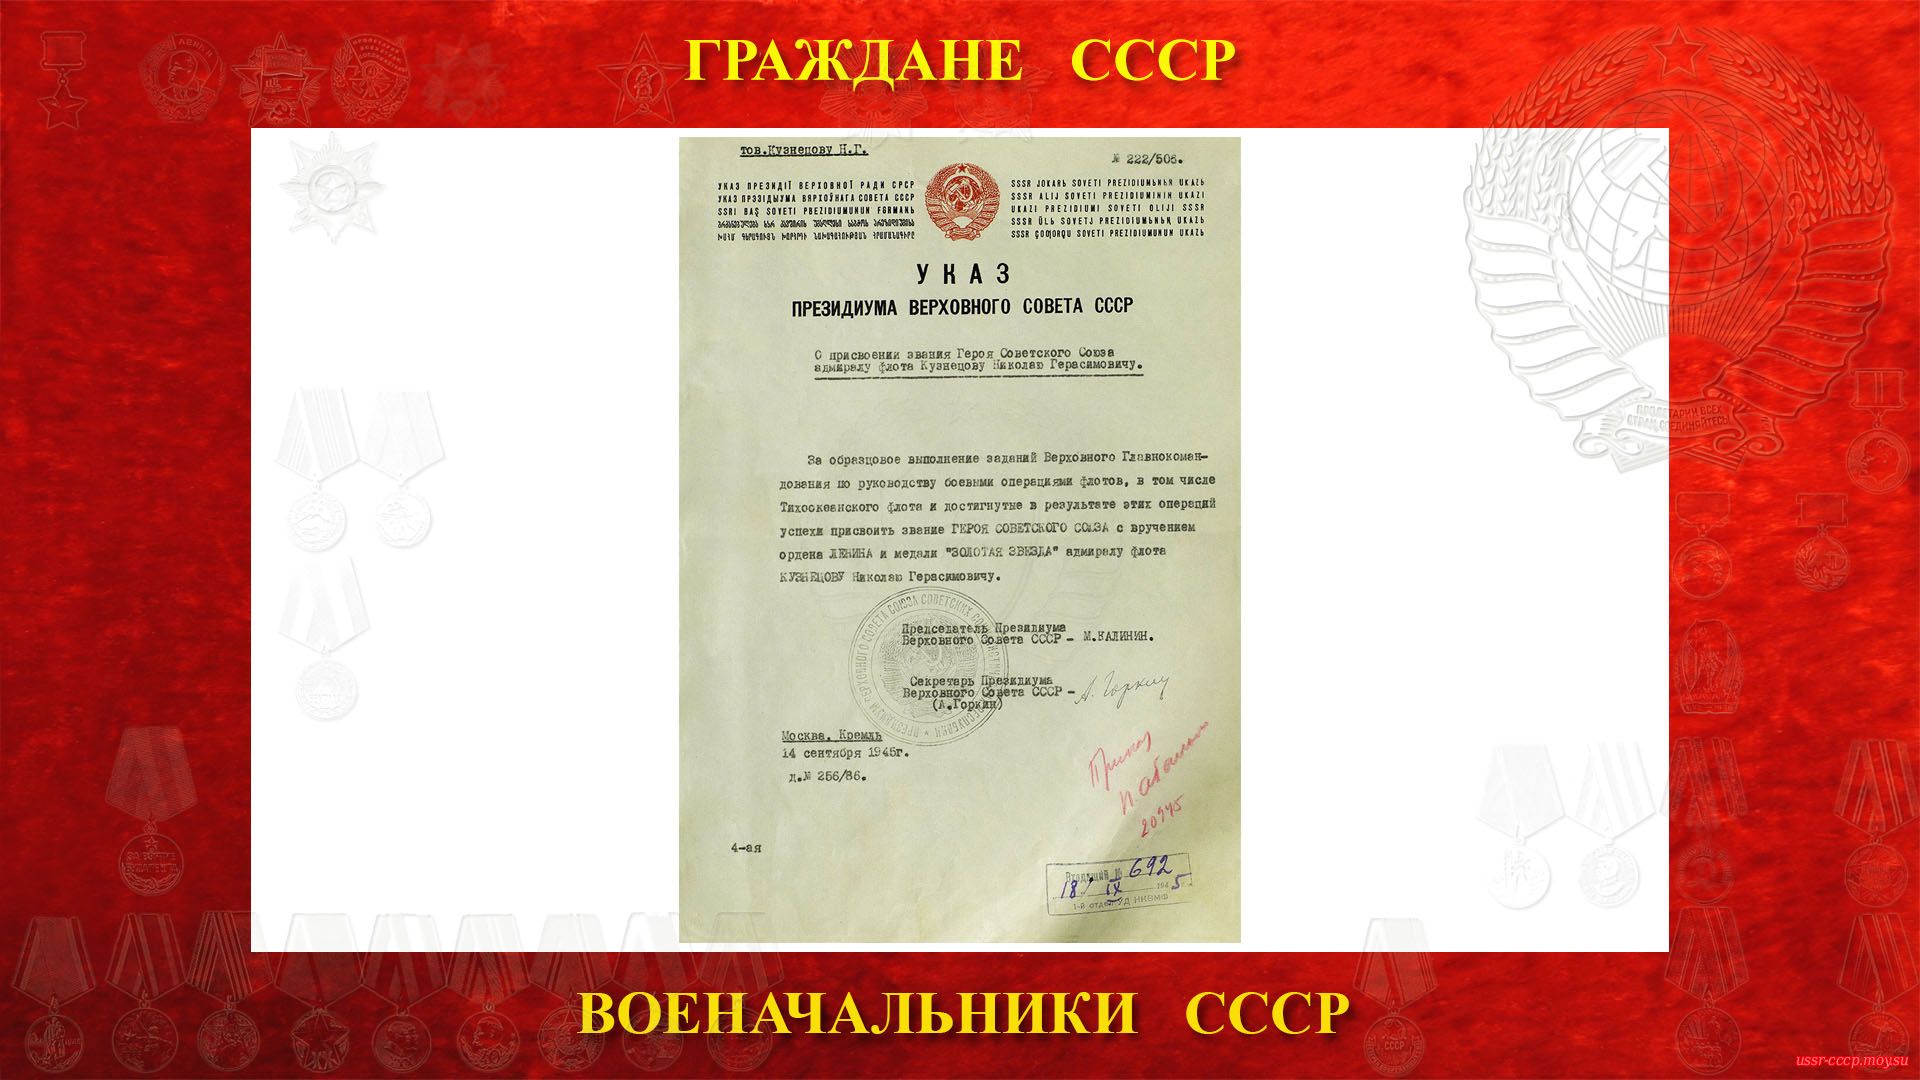 14 сентября 1945 года Кузнецову присвоено звание Героя Советского Союза.